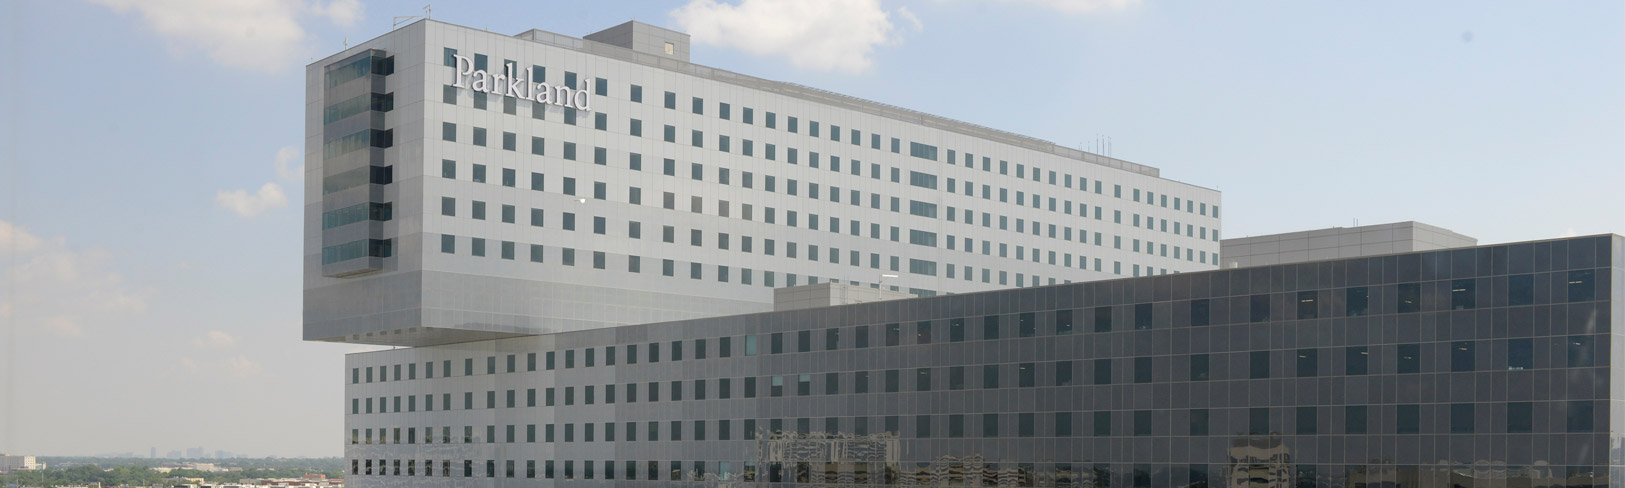 Large boxy hospital building